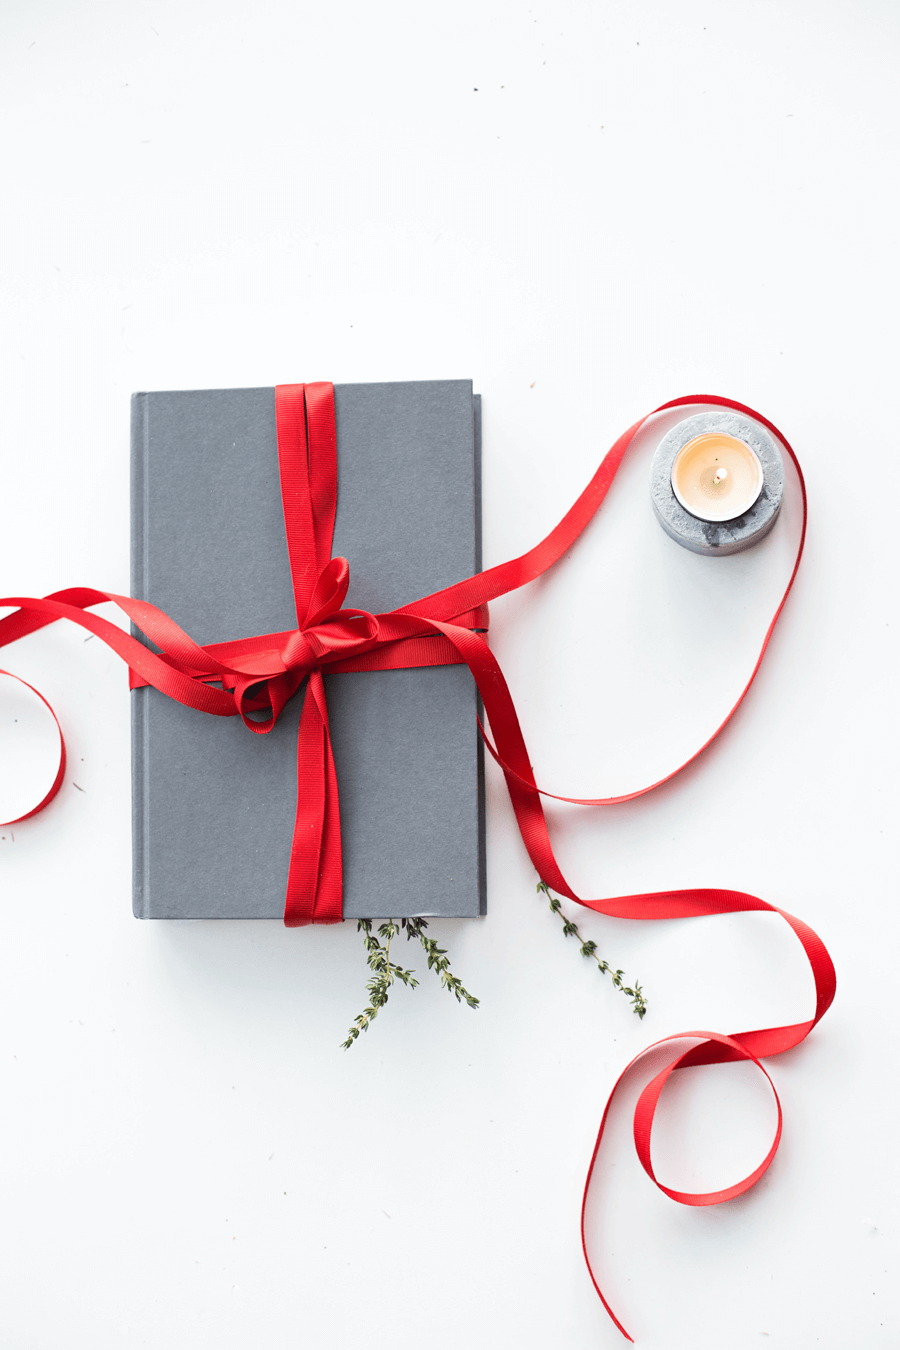 Voici 3 accessoires Apple à découvrir pour vos futurs cadeaux de Noël